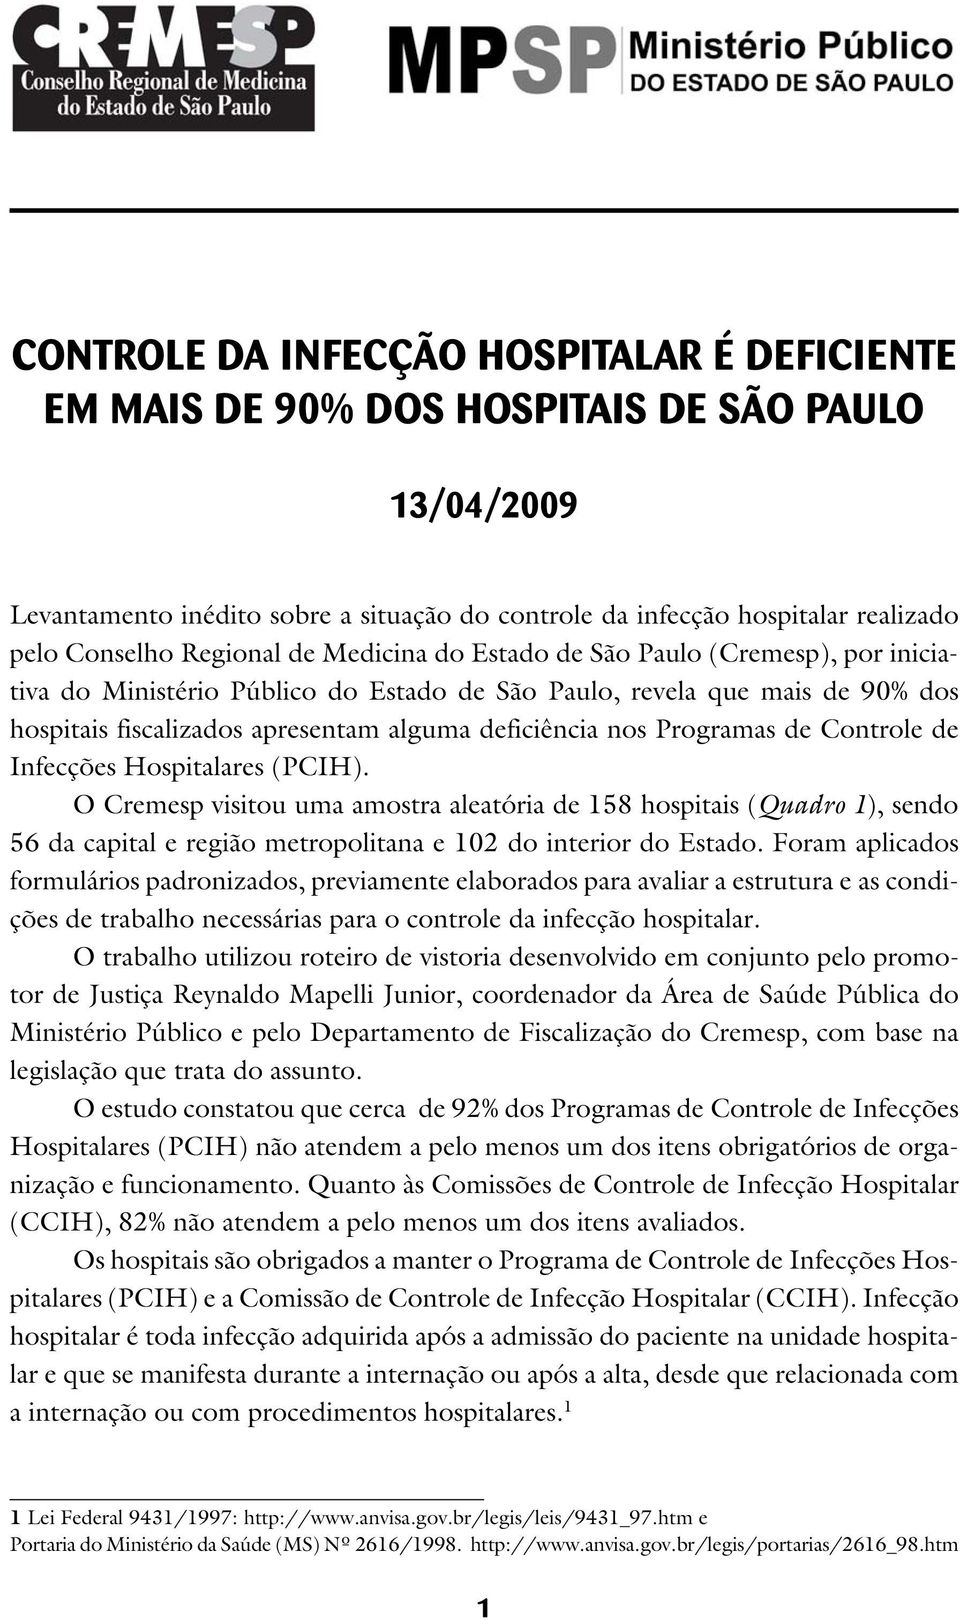 Programas de Controle de Infecções Hospitalares (PCIH). O Cremesp visitou uma amostra aleatória de 158 hospitais (Quadro 1), sendo 56 da capital e região metropolitana e 102 do interior do Estado.